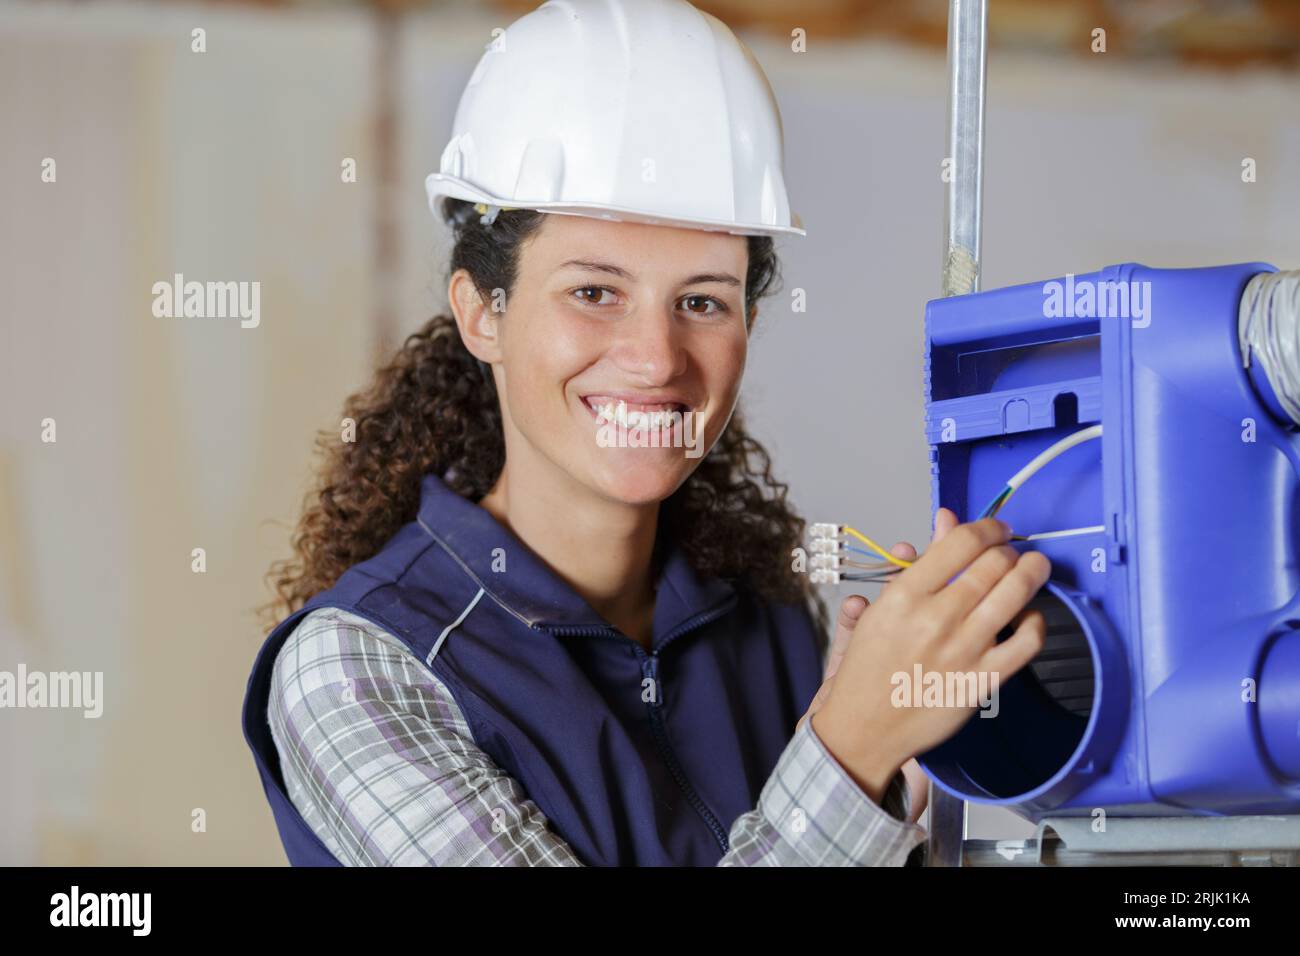 Weibliche Bauherrin, die einen Lüftungskasten installiert Stockfoto